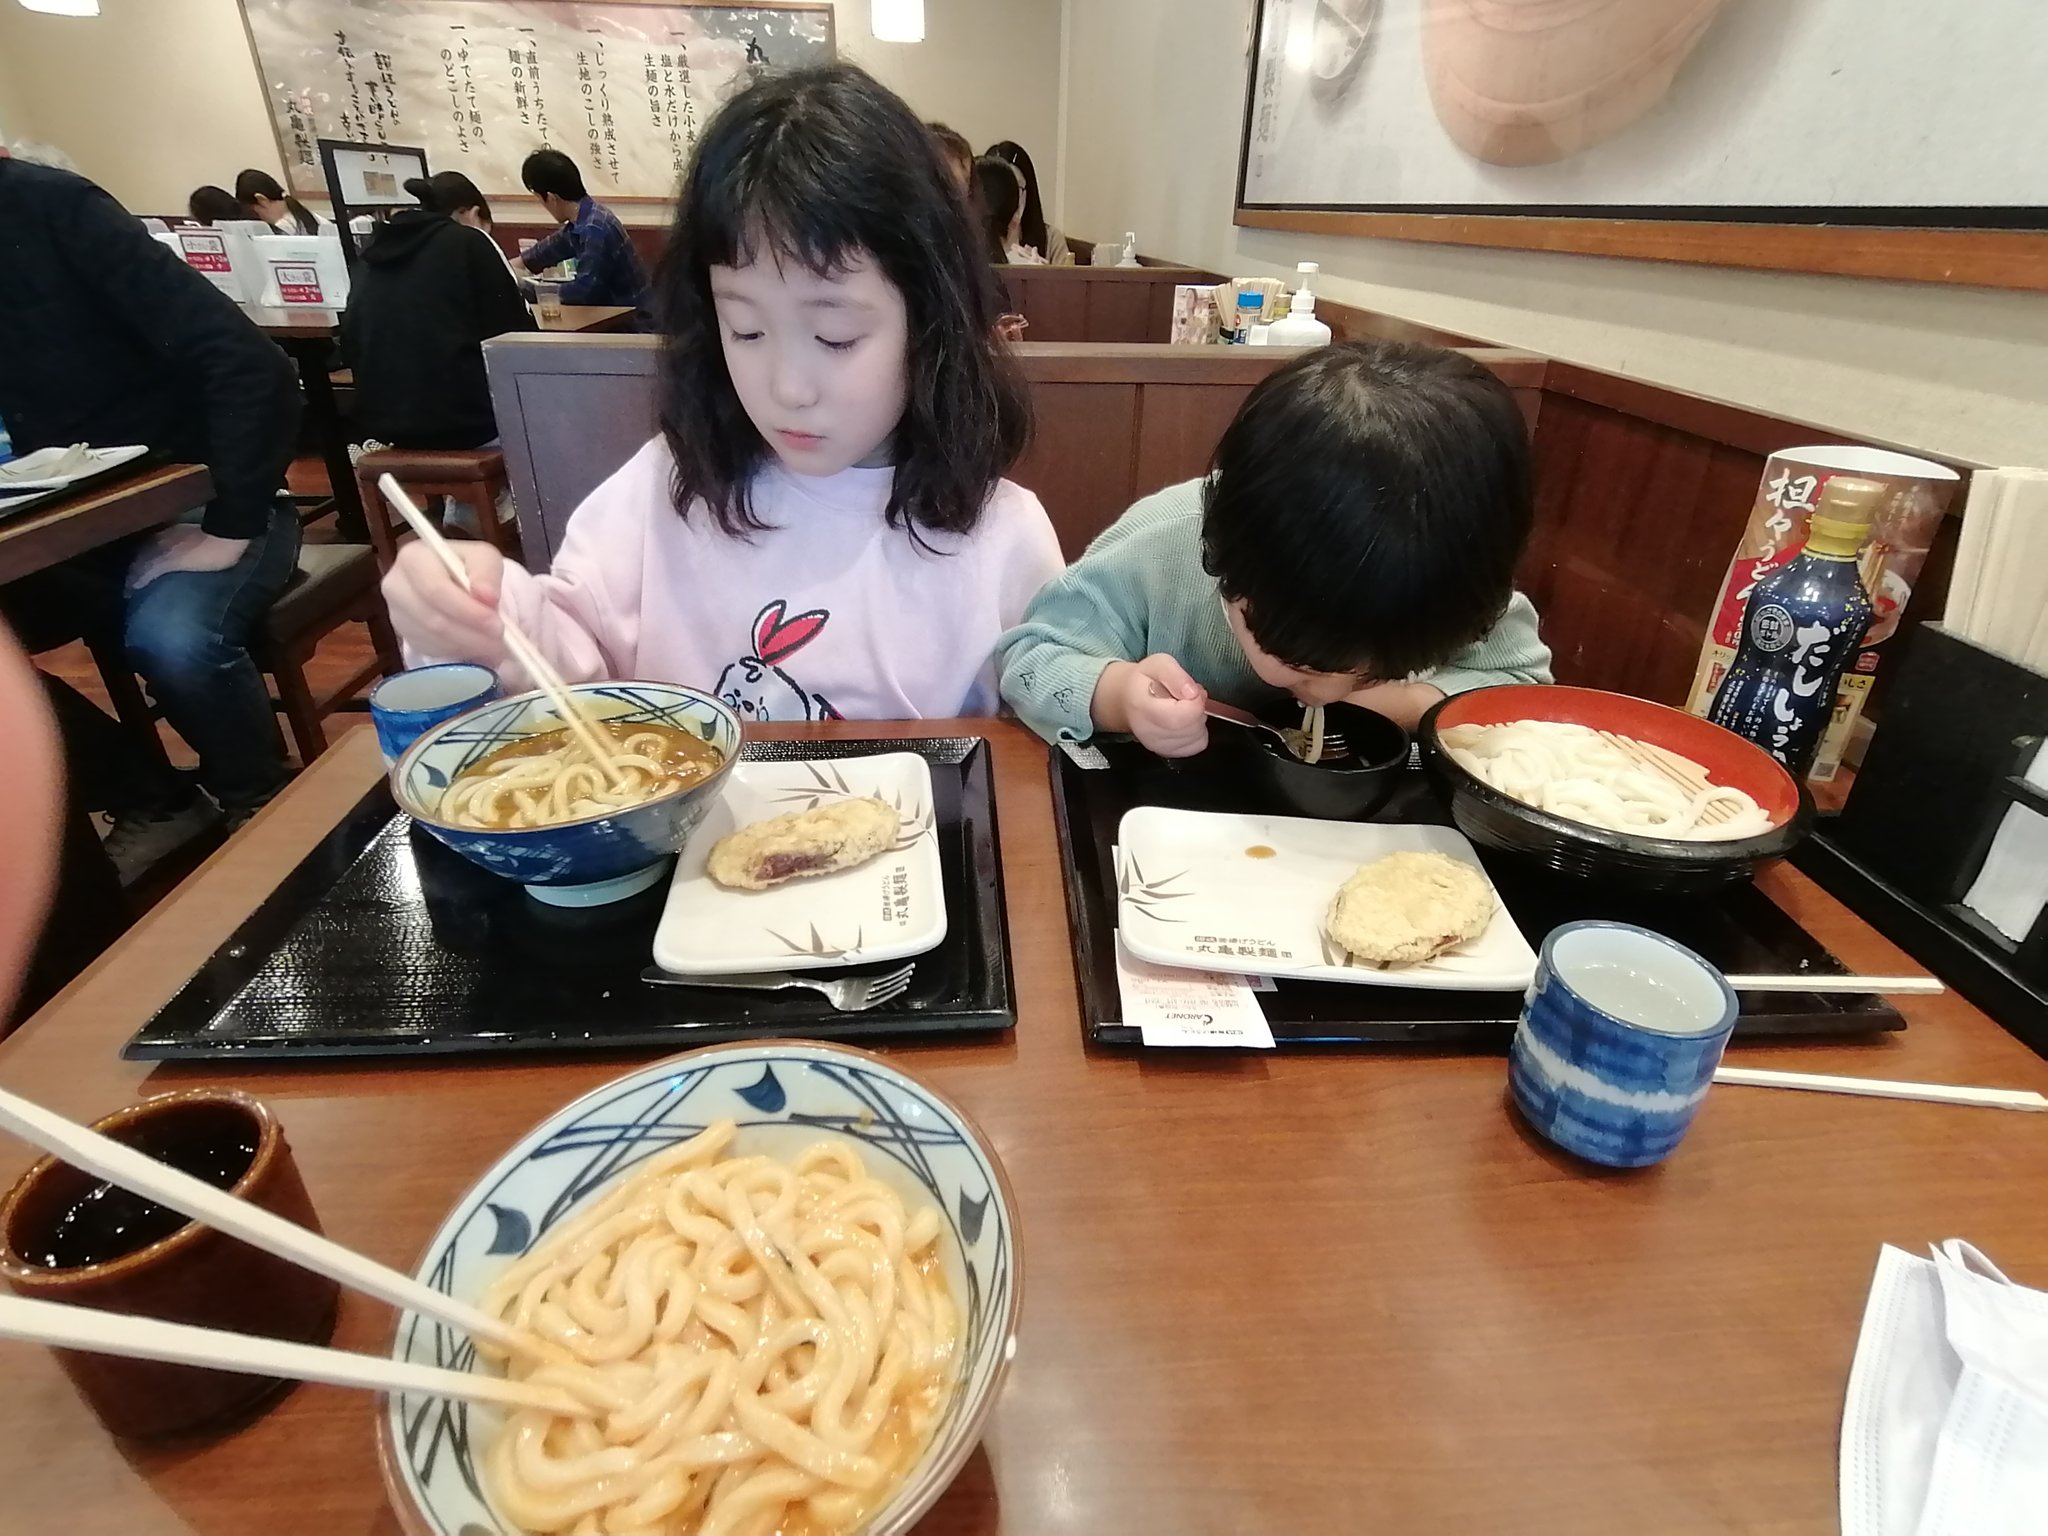 ペチパーライス on Twitter: "丸亀製麺食べにきたよ。 https://t.co/BT3IQHb2aE" / Twitter